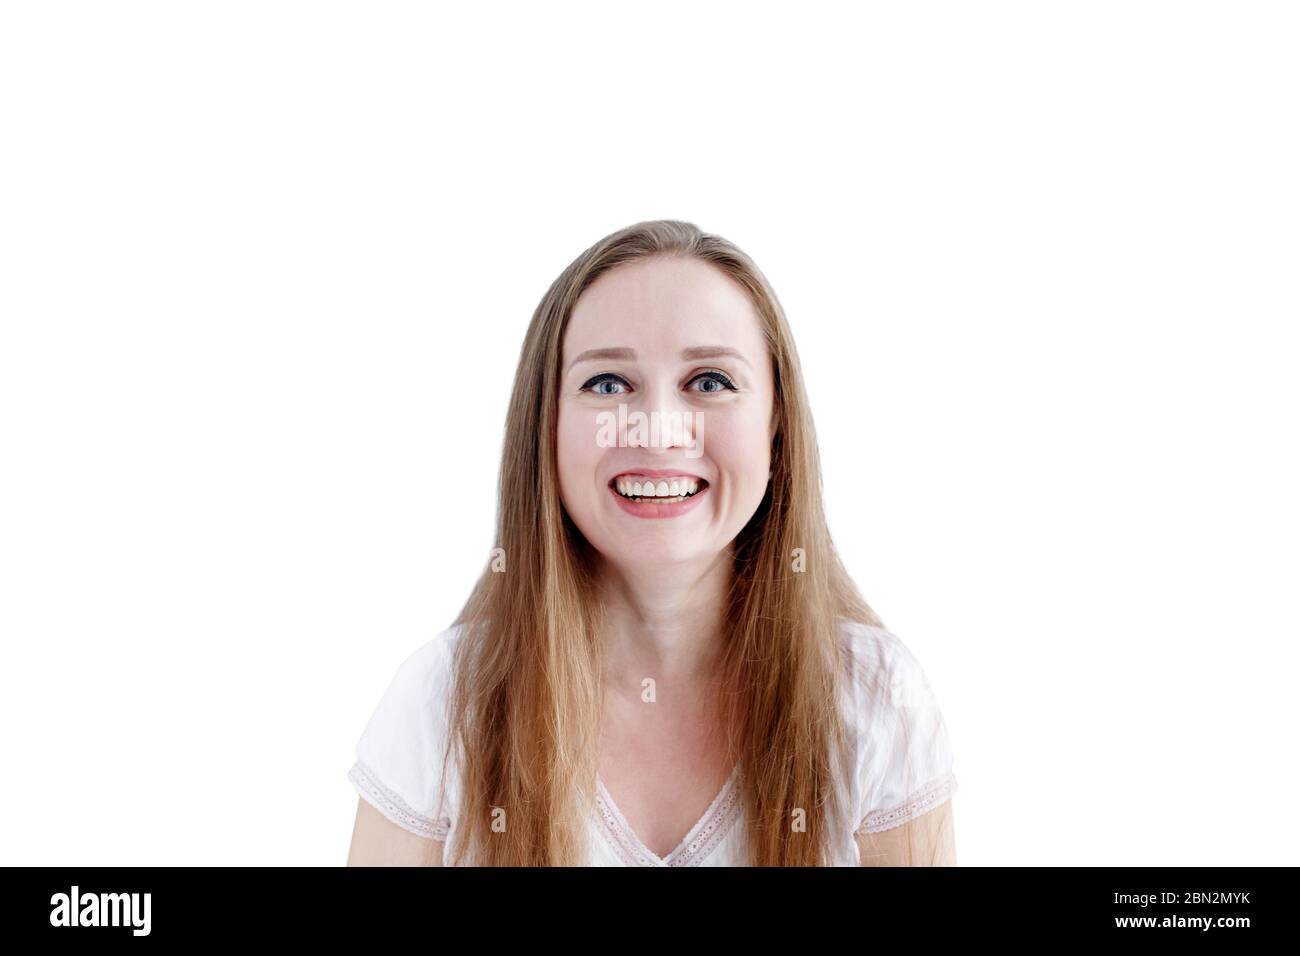 Emozionata donna felice con ampio sorriso sul viso, ritratto ravvicinato di naturale attraente femmina isolato su sfondo bianco Foto Stock